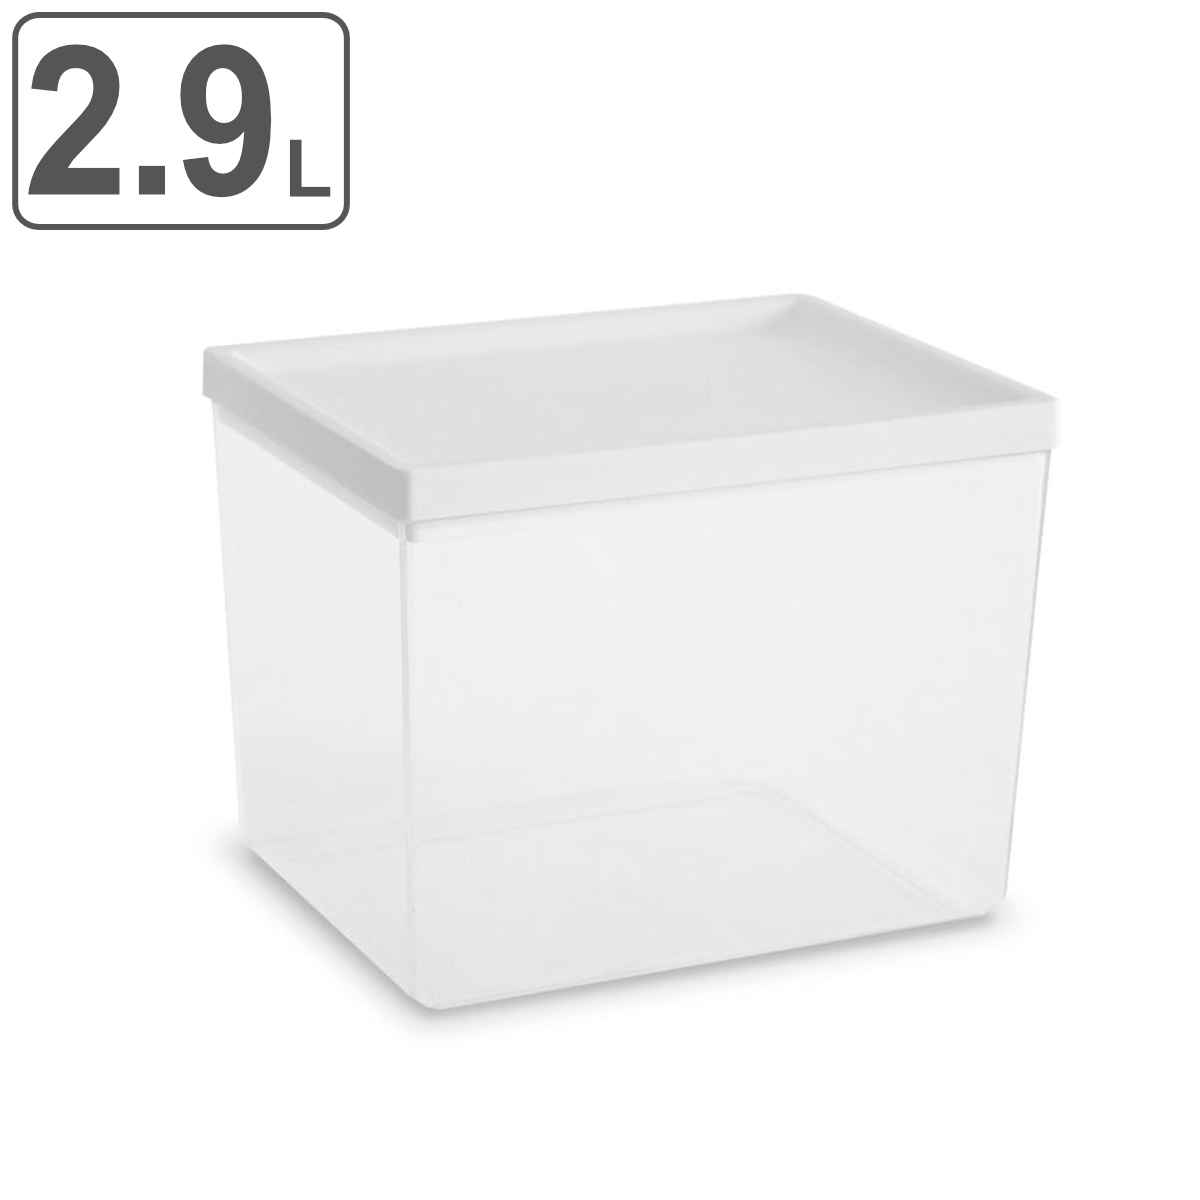 保存容器 2.9L アシュビー ラージ キャニスター ホワイト Abode Homewares （ アボードホームウェア プラスチック容器 保存 容器 食品保